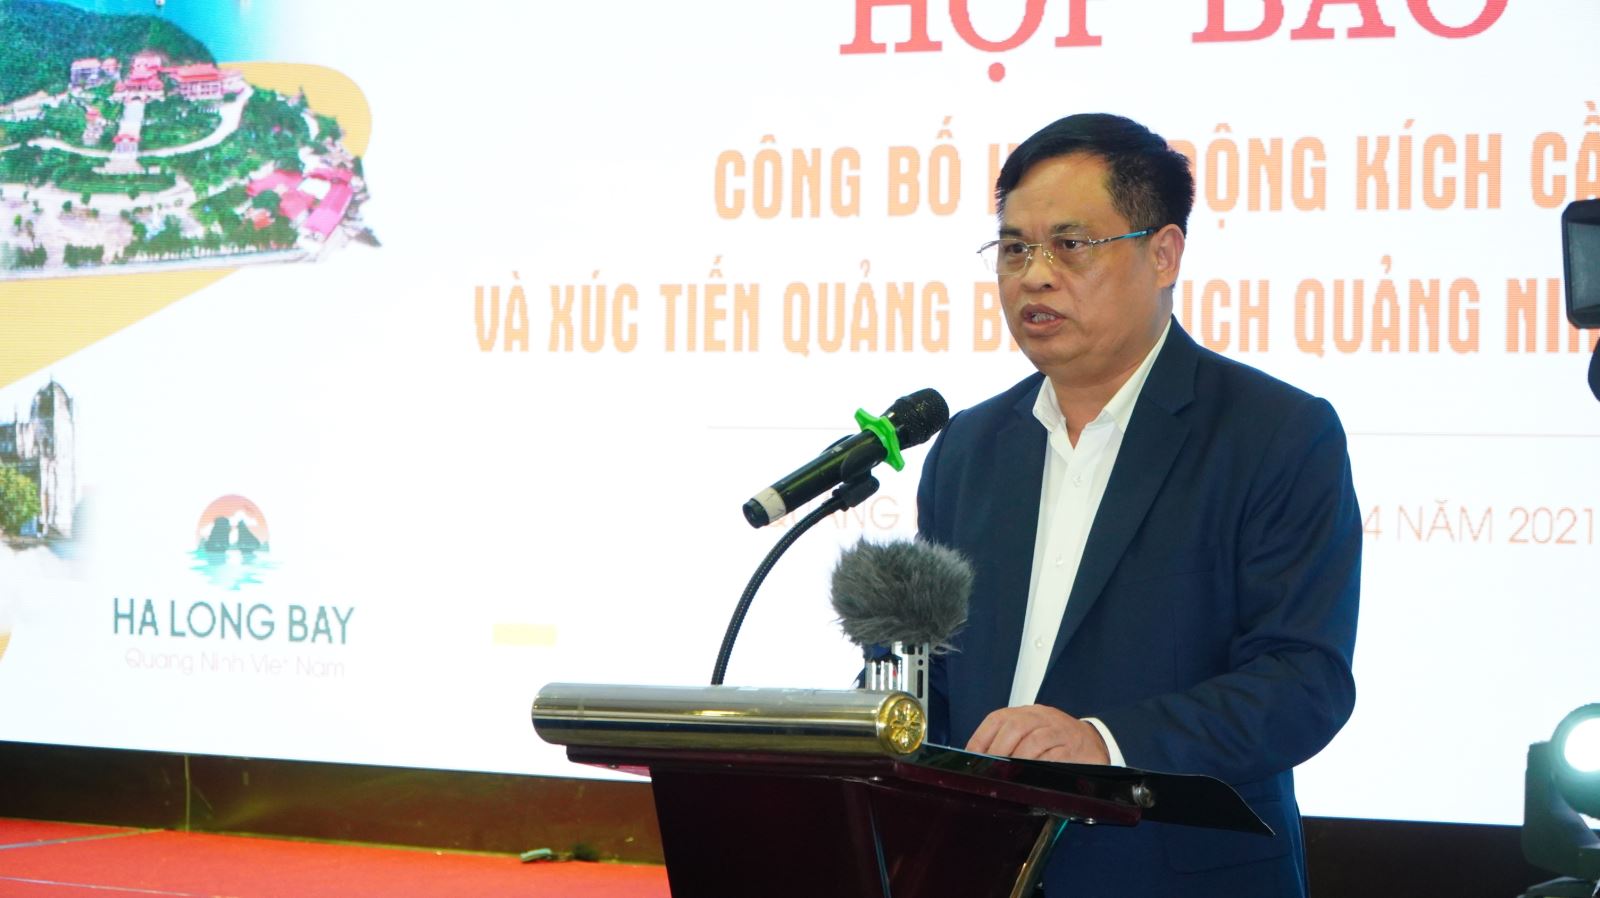 Giám đốc Sở Du lịch Quảng Ninh Phạm Ngọc Thủy thông tin về chính sách kích cầu, hoạt động, sự kiện kích cầu năm 2021 